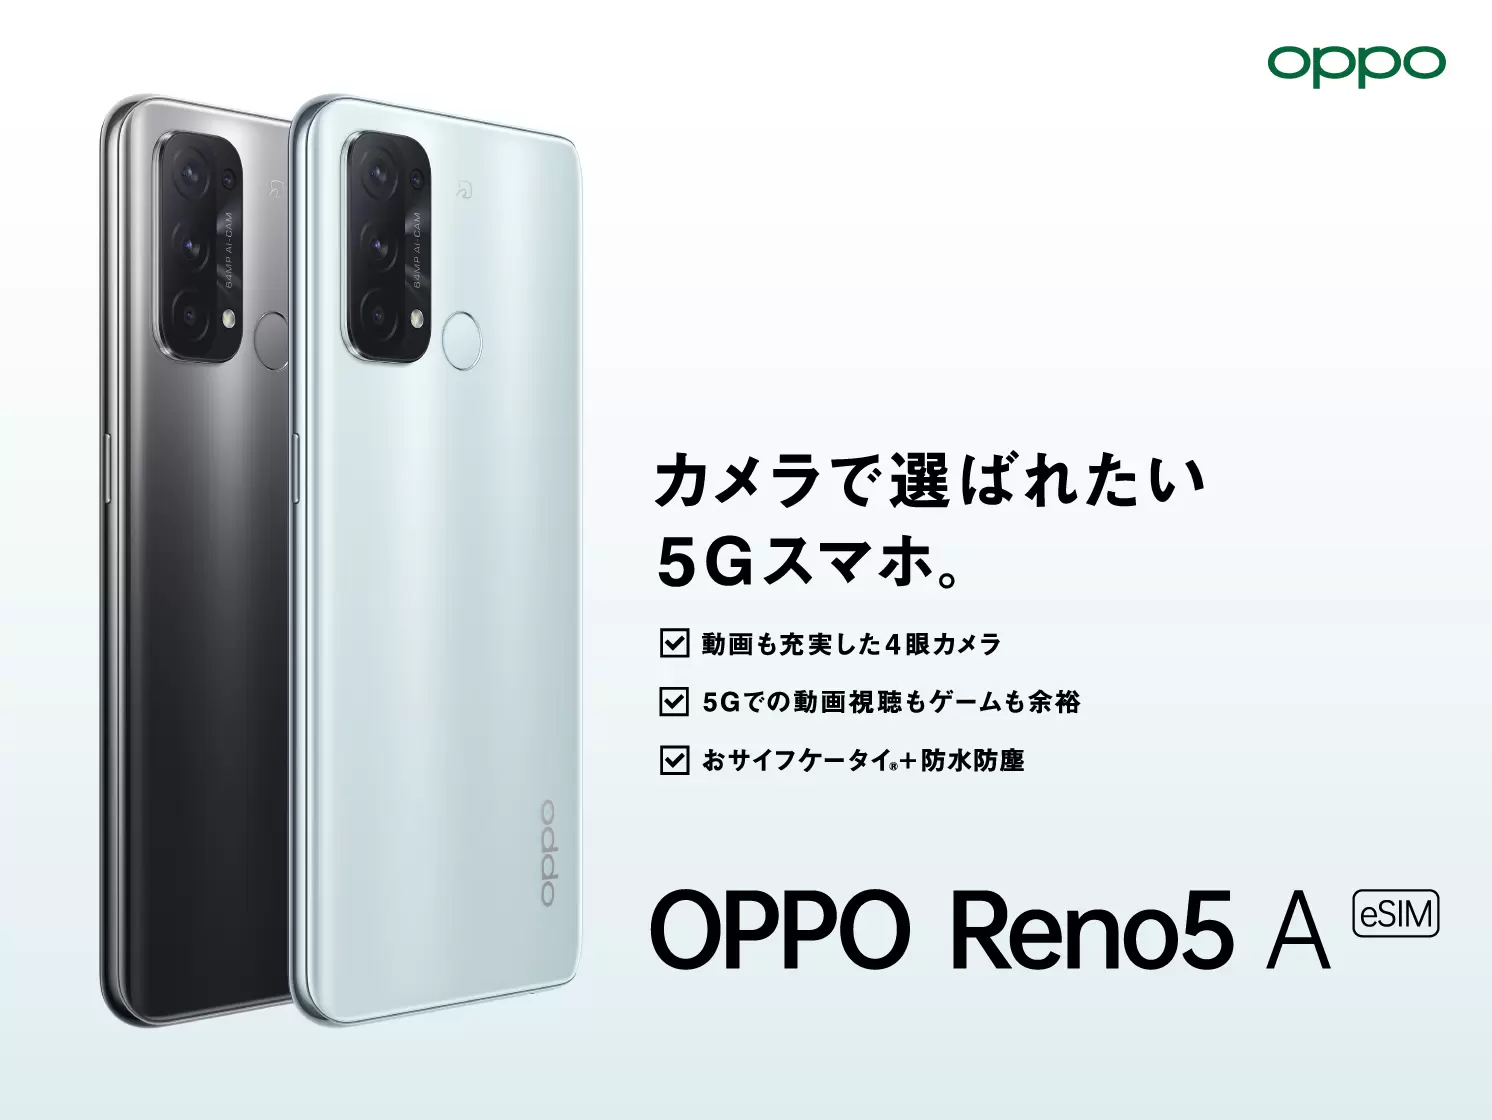 OPPO Reno5 A (eSIM)」がワイモバイルにて 2月24日(木)から発売開始 | オウガ・ジャパン